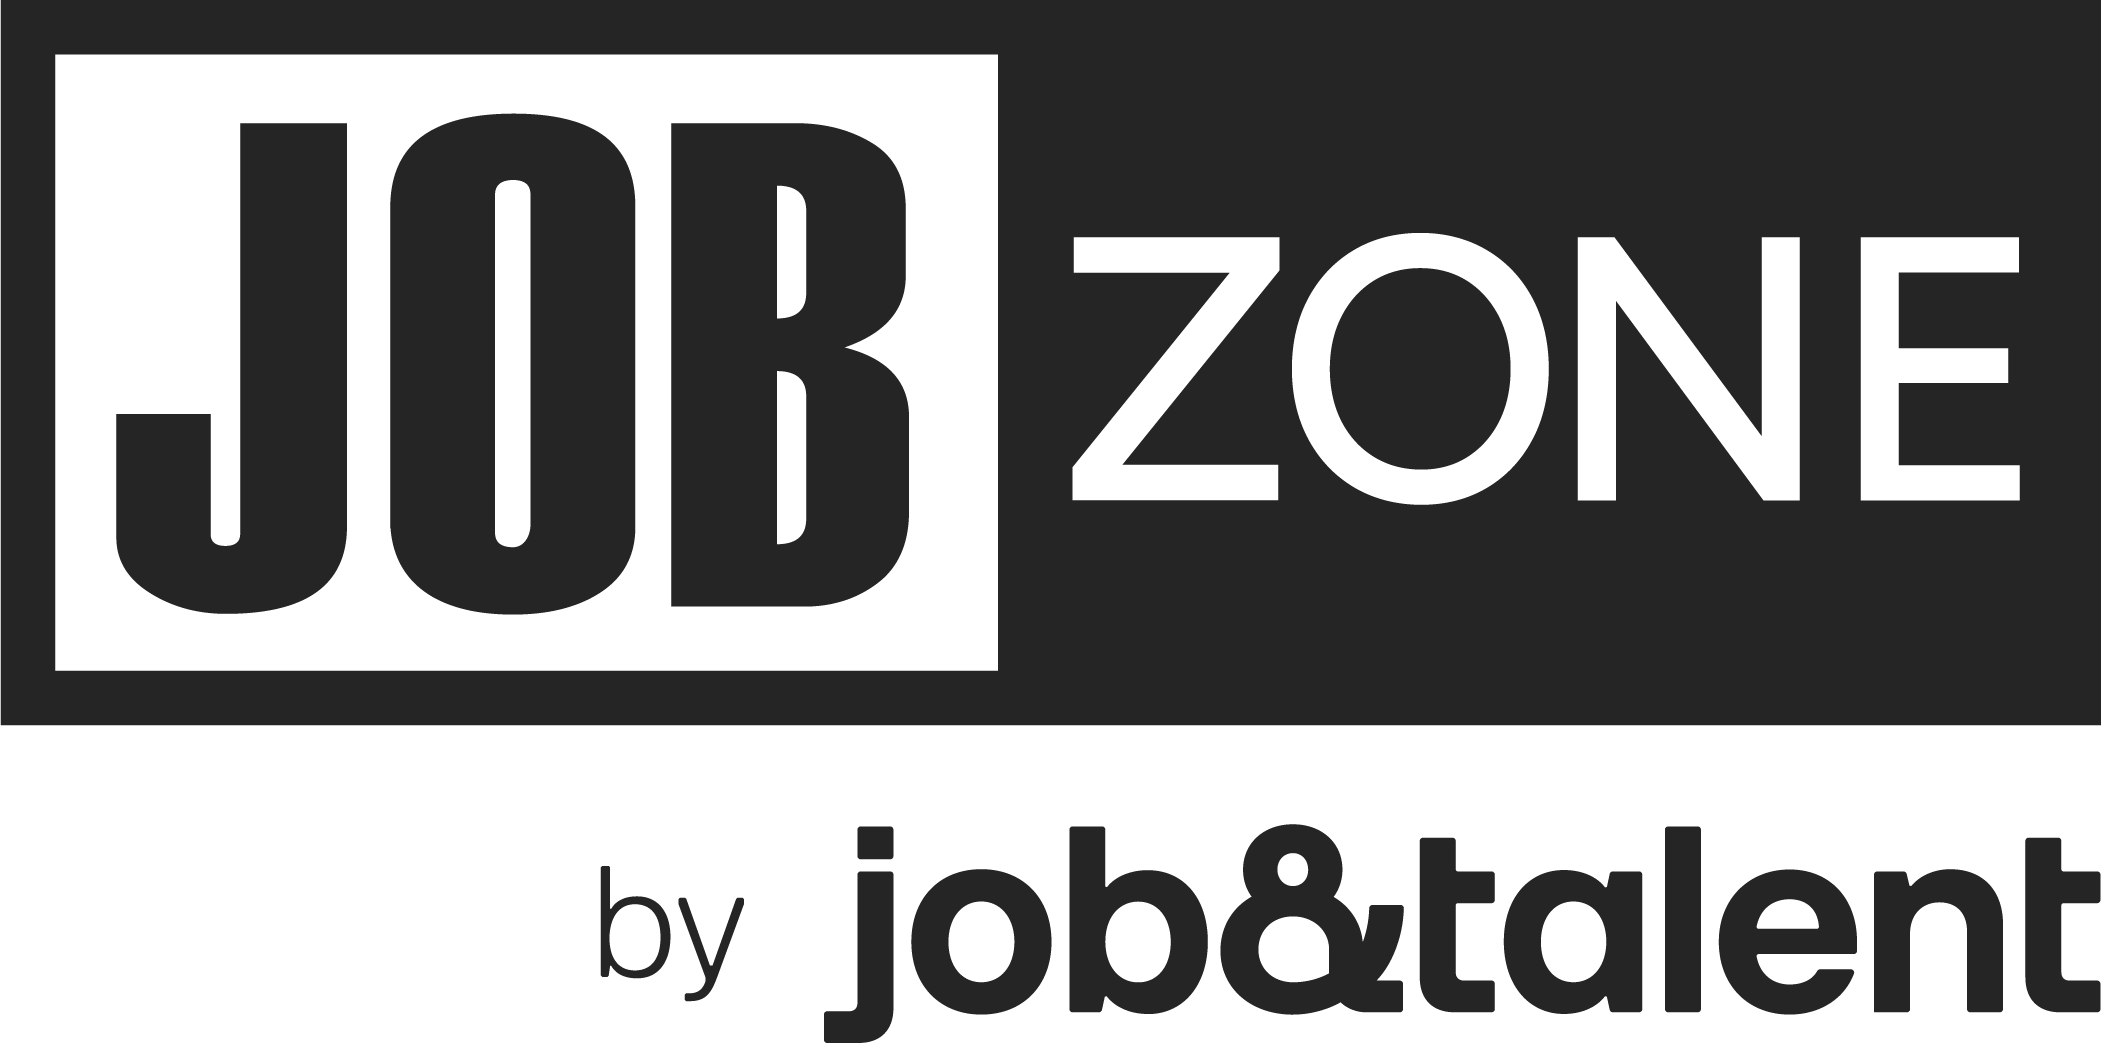 Jobzone